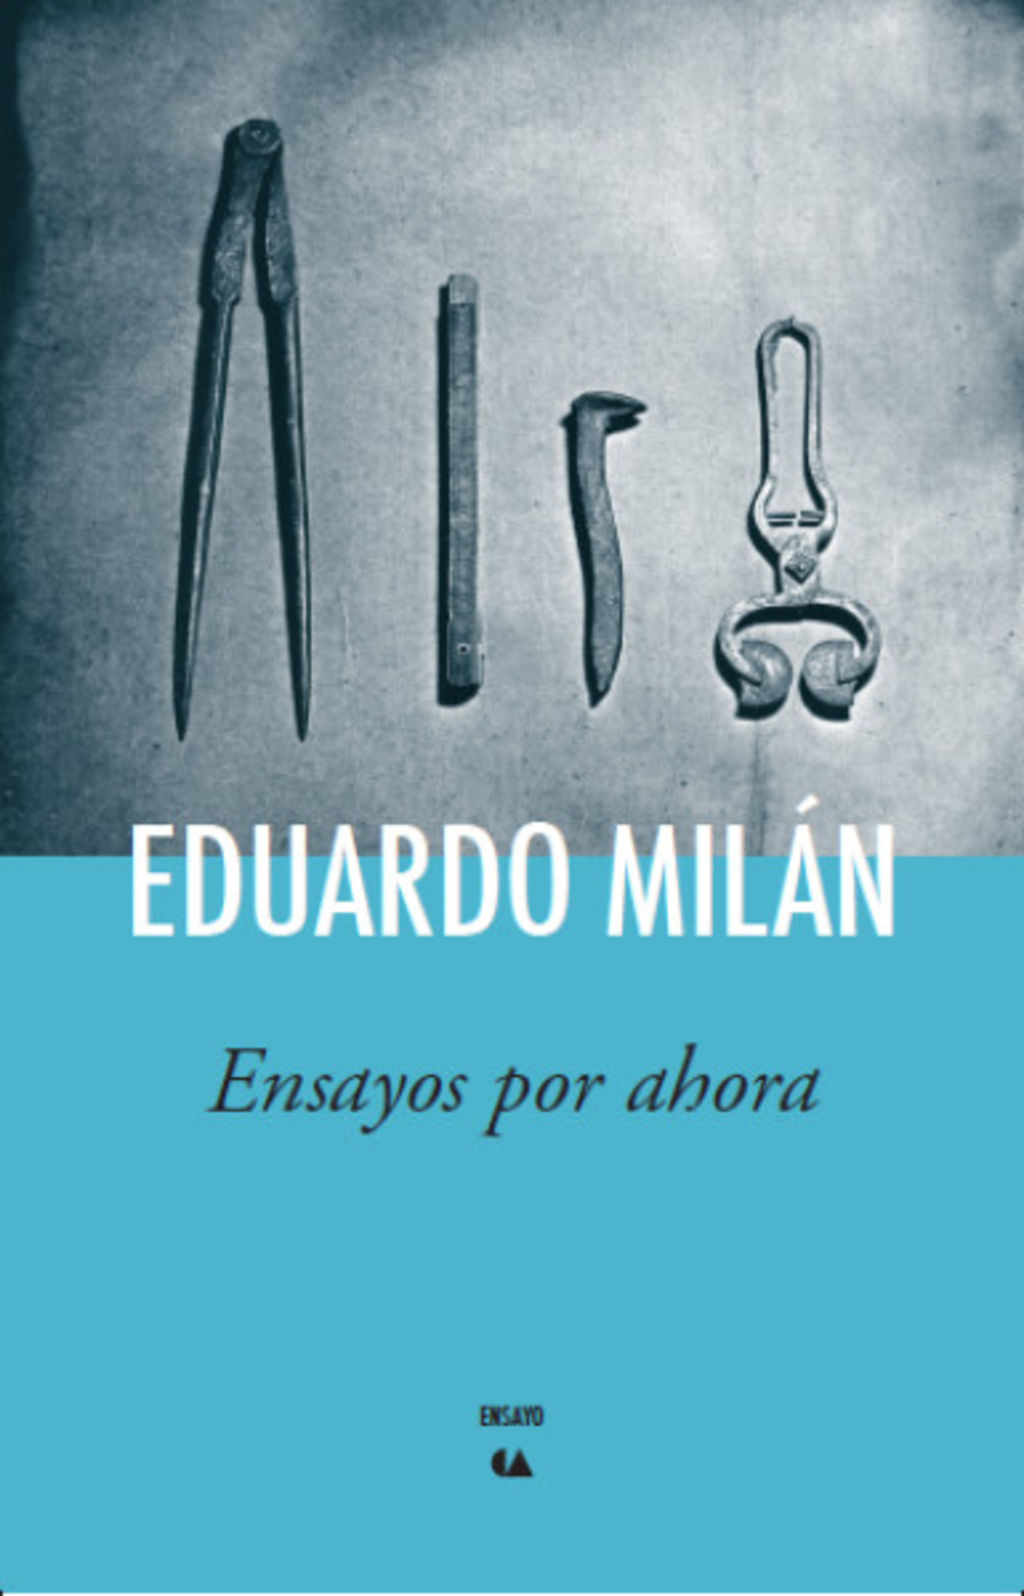 Eduardo Milán. Se ha convertido en pieza clave para que los lectores de México.